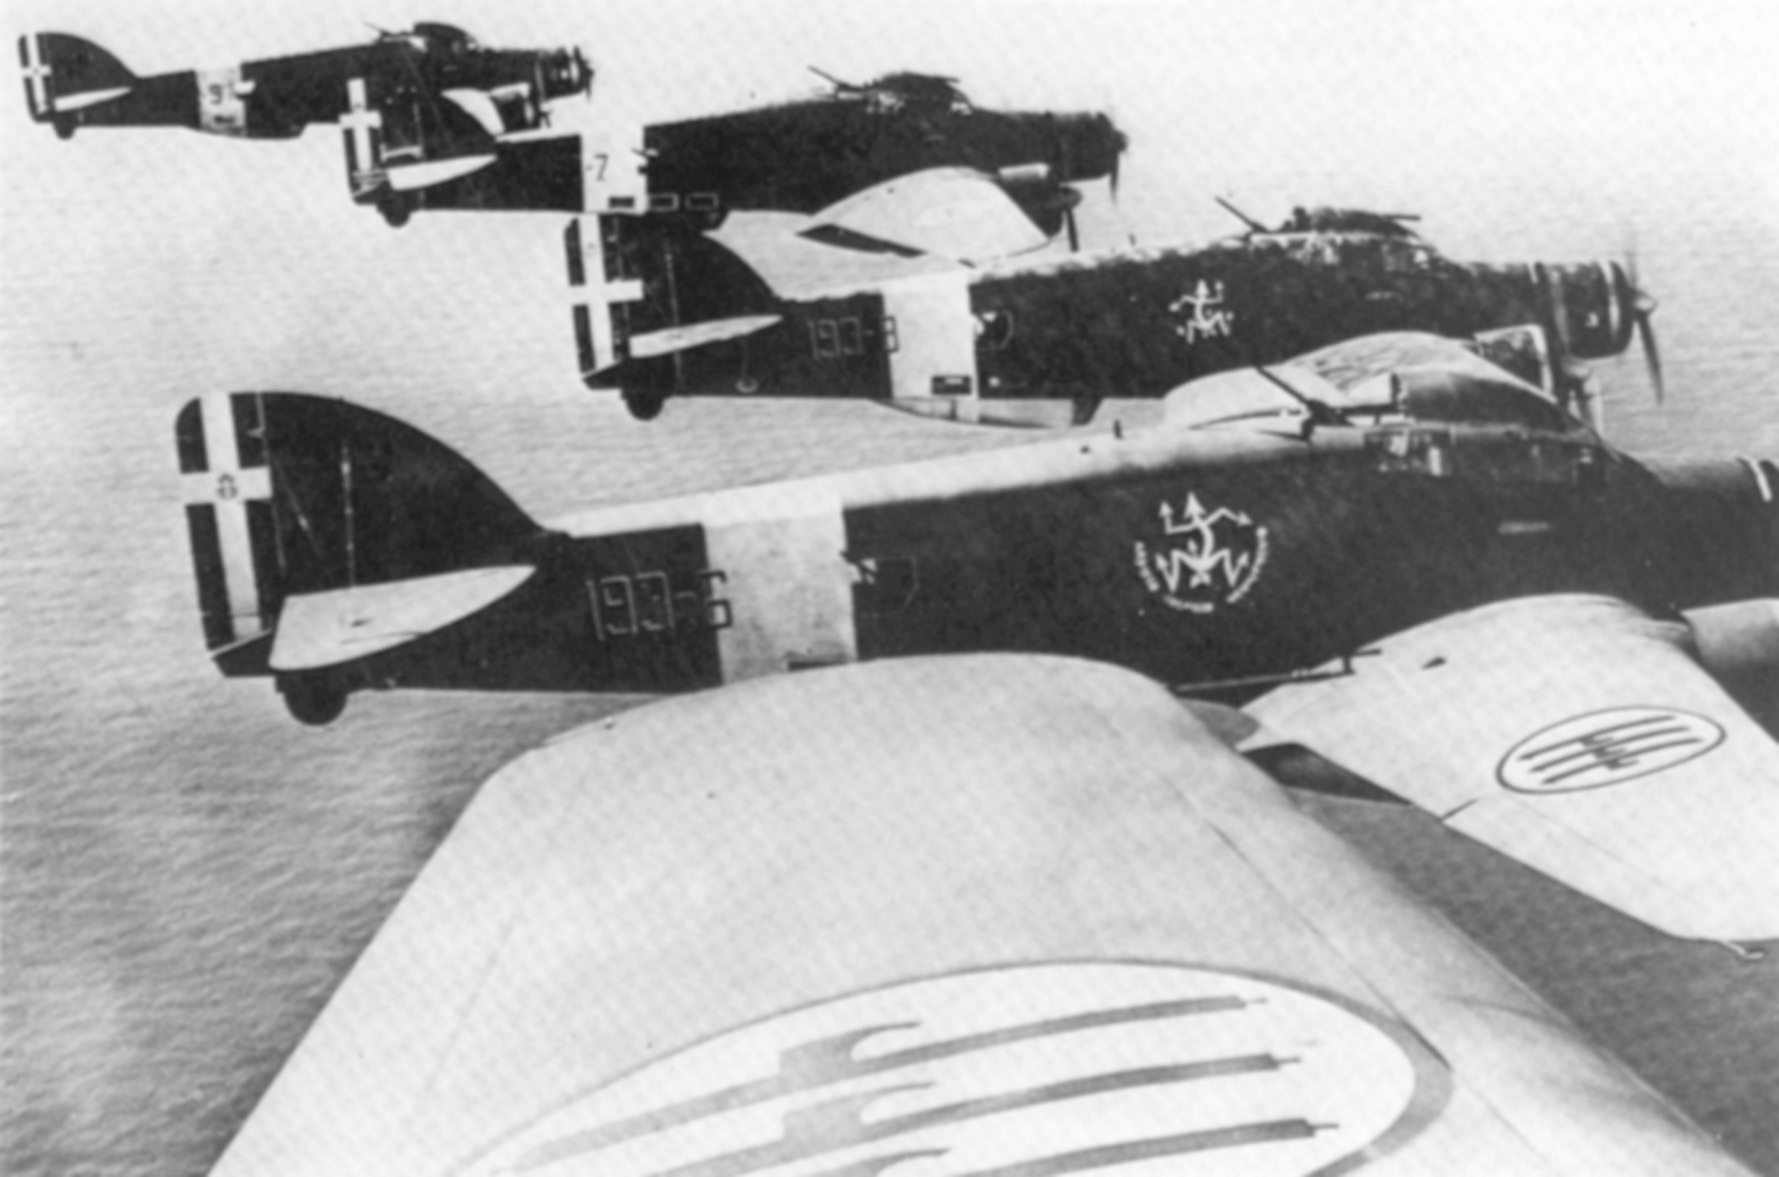 Balbo met his death in a Savoia-Marchetti SM.79 Sparviero Regio Aeronautica bomber.